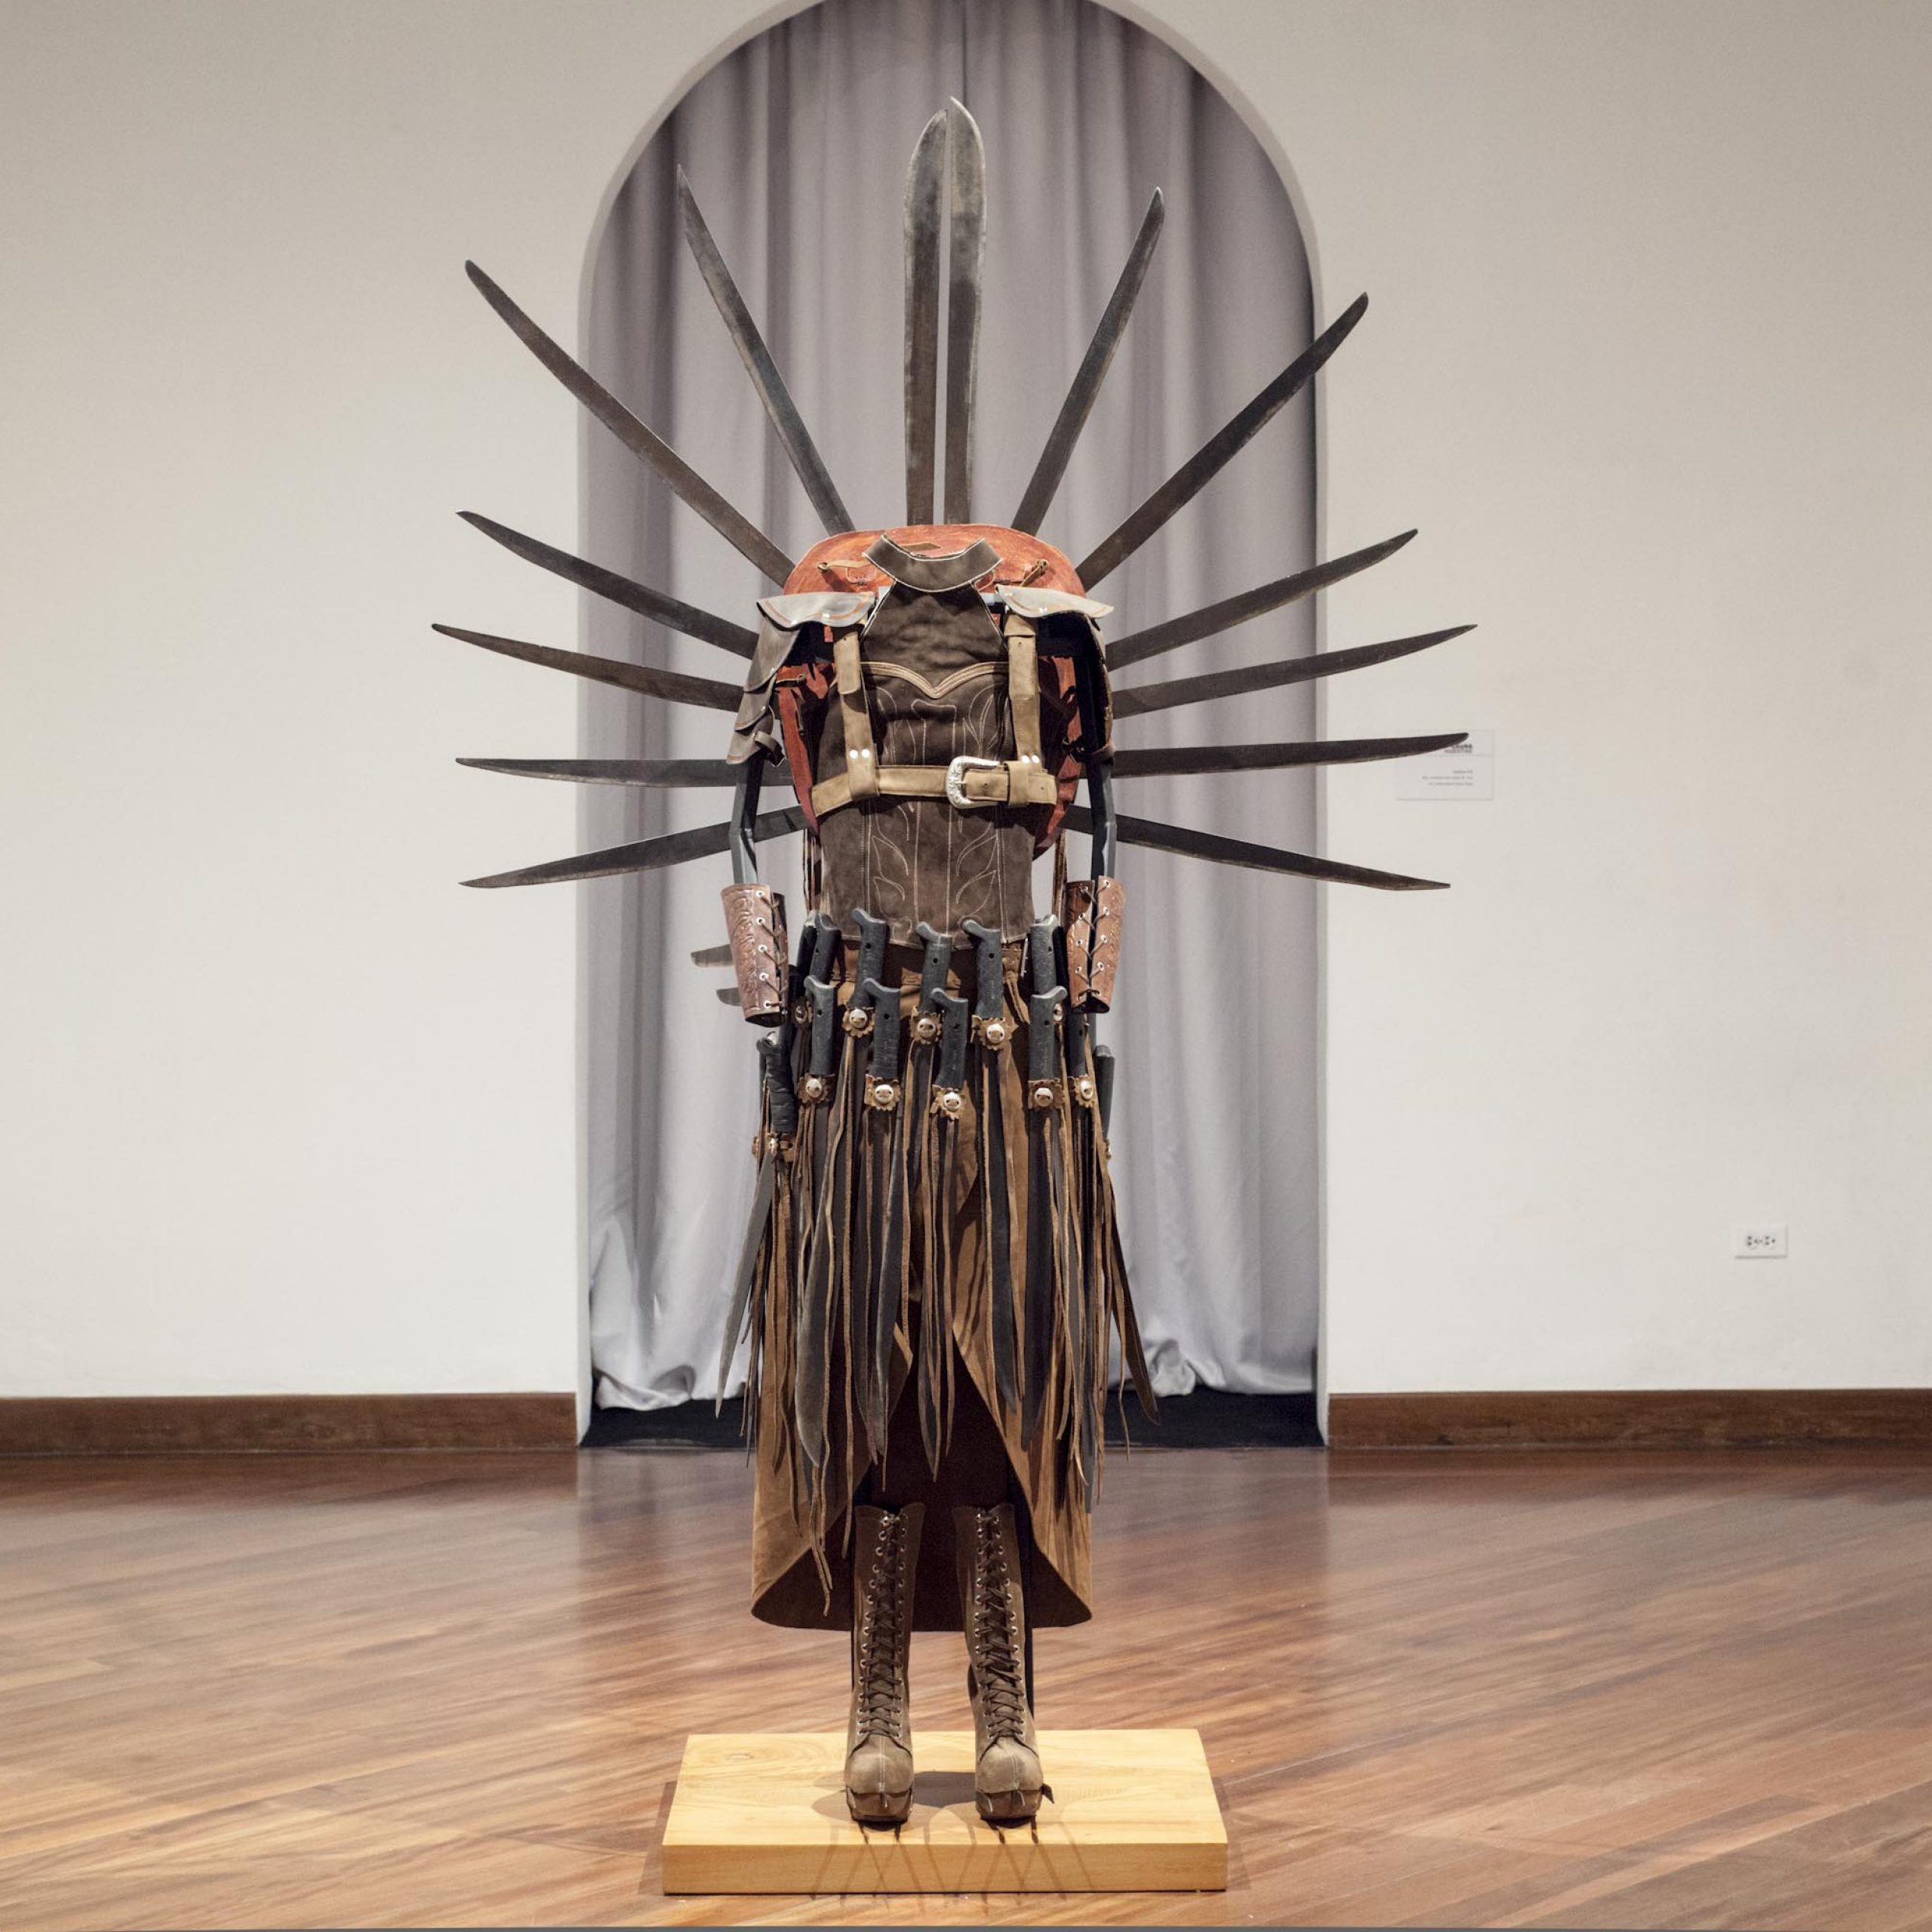 Vista de la obra "Machete Dress", de Fredman Barahona, en la muestra "Inmersiones estratégicas", Programa de Becas y Comisiones de CIFO 2018, en el Centro Cultural Metropolitano de Quito (METQuito), Ecuador. Cortesía del artista y CIFO.